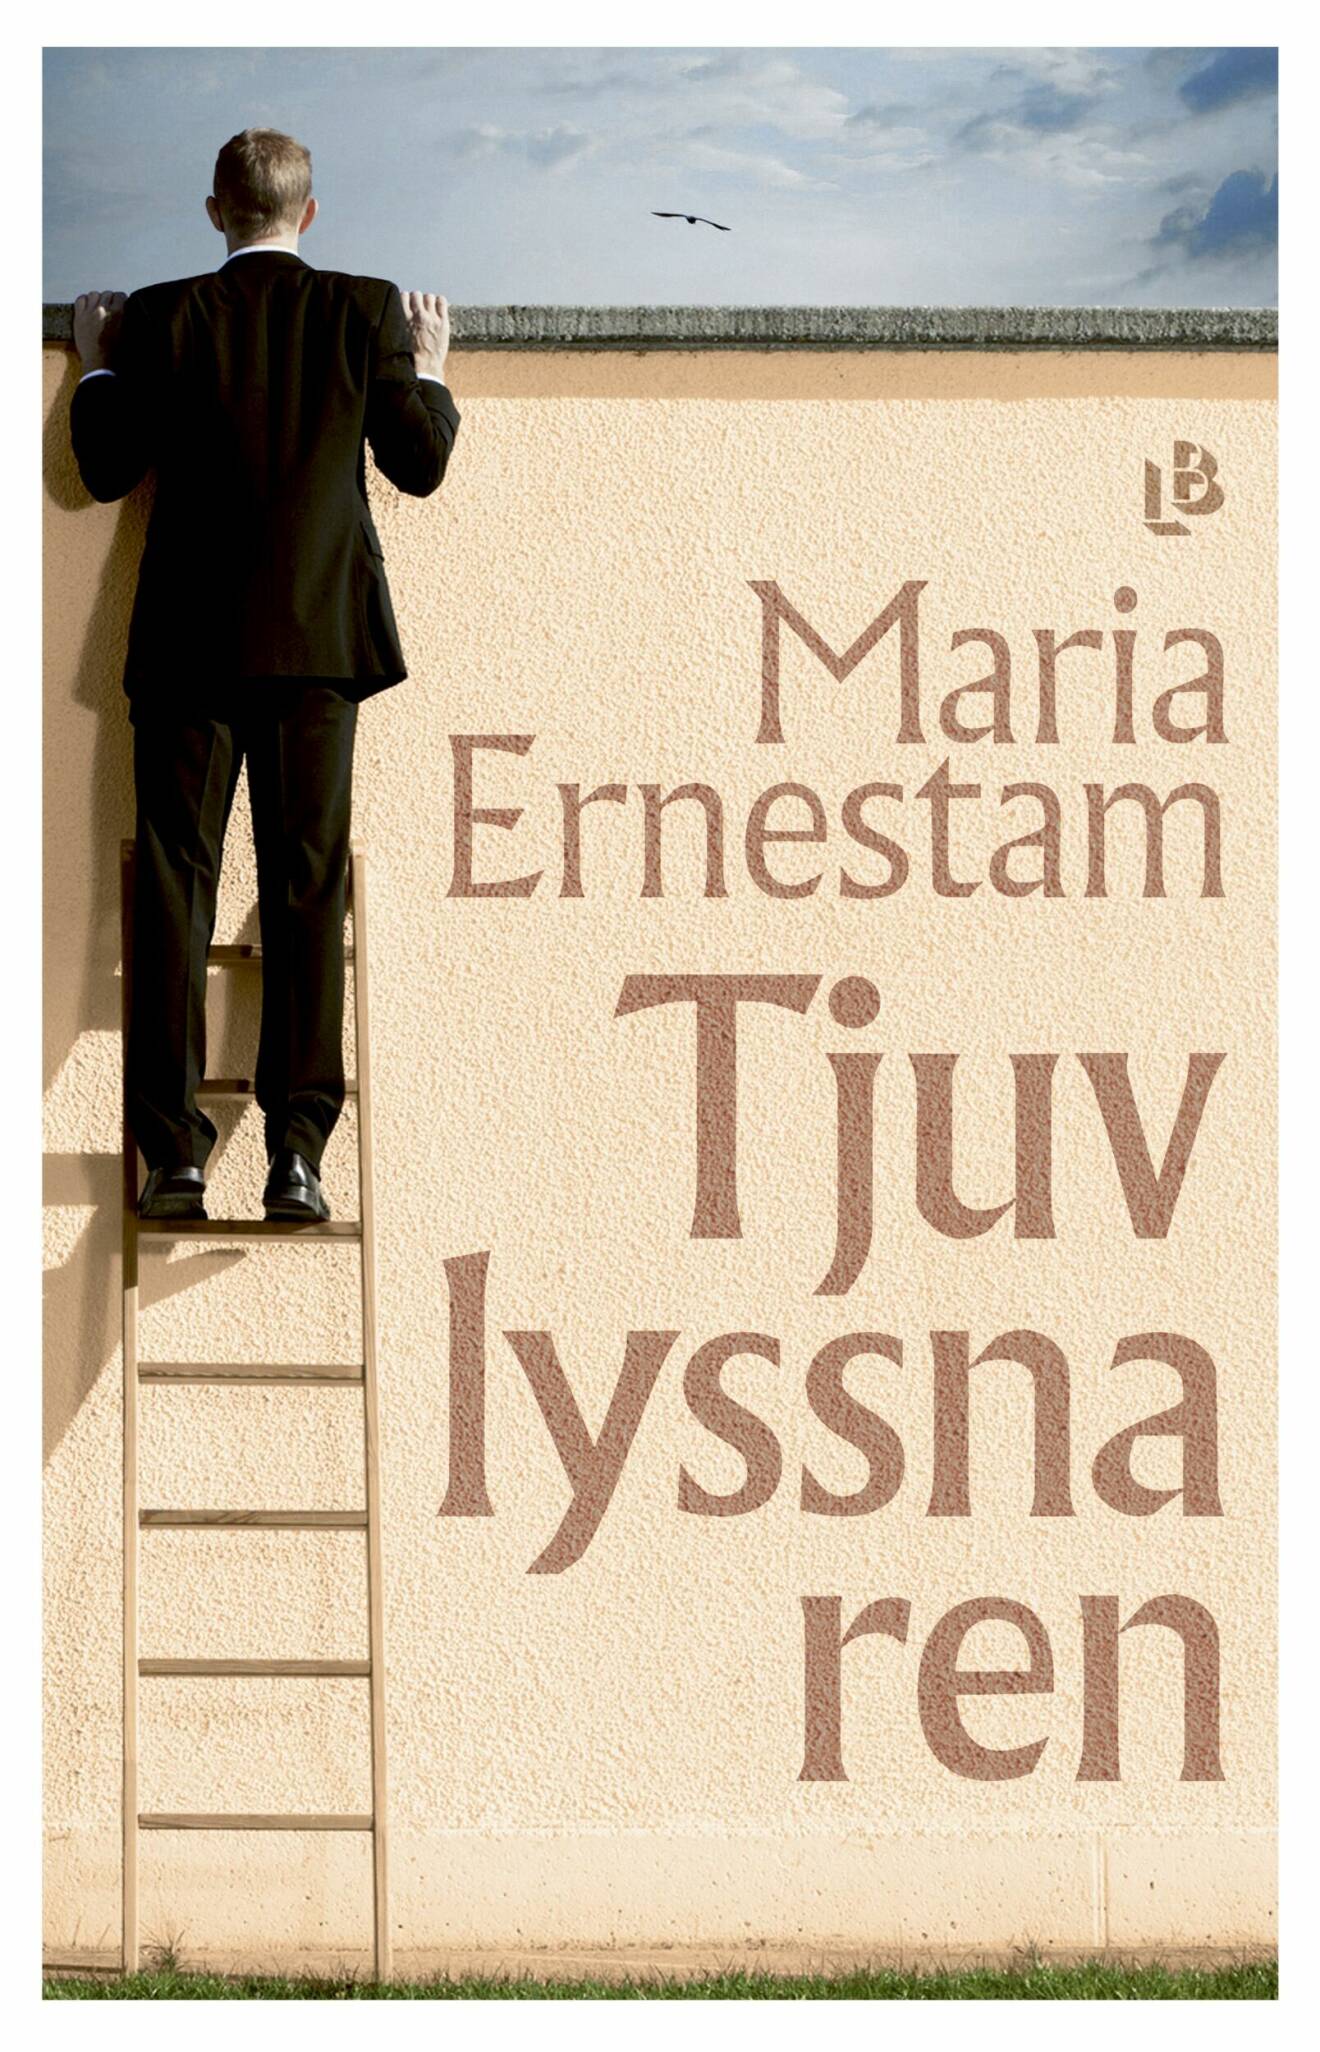 Tjuvlyssnaren av Maria Ernestam (LB Förlag).